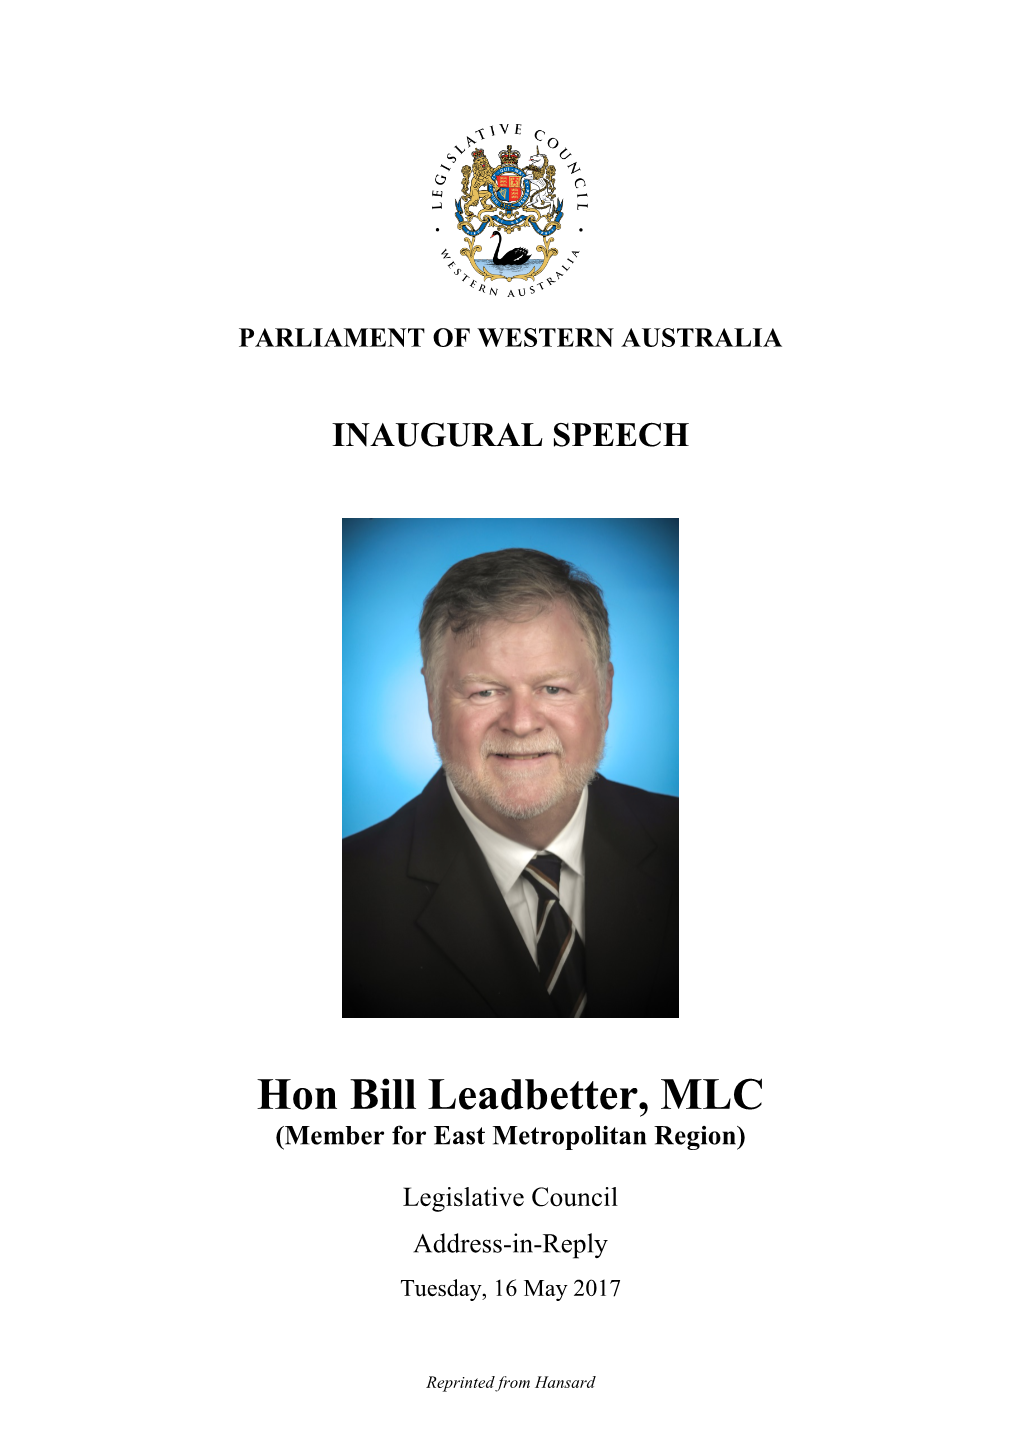 Hon Bill Leadbetter, MLC (Member for East Metropolitan Region)